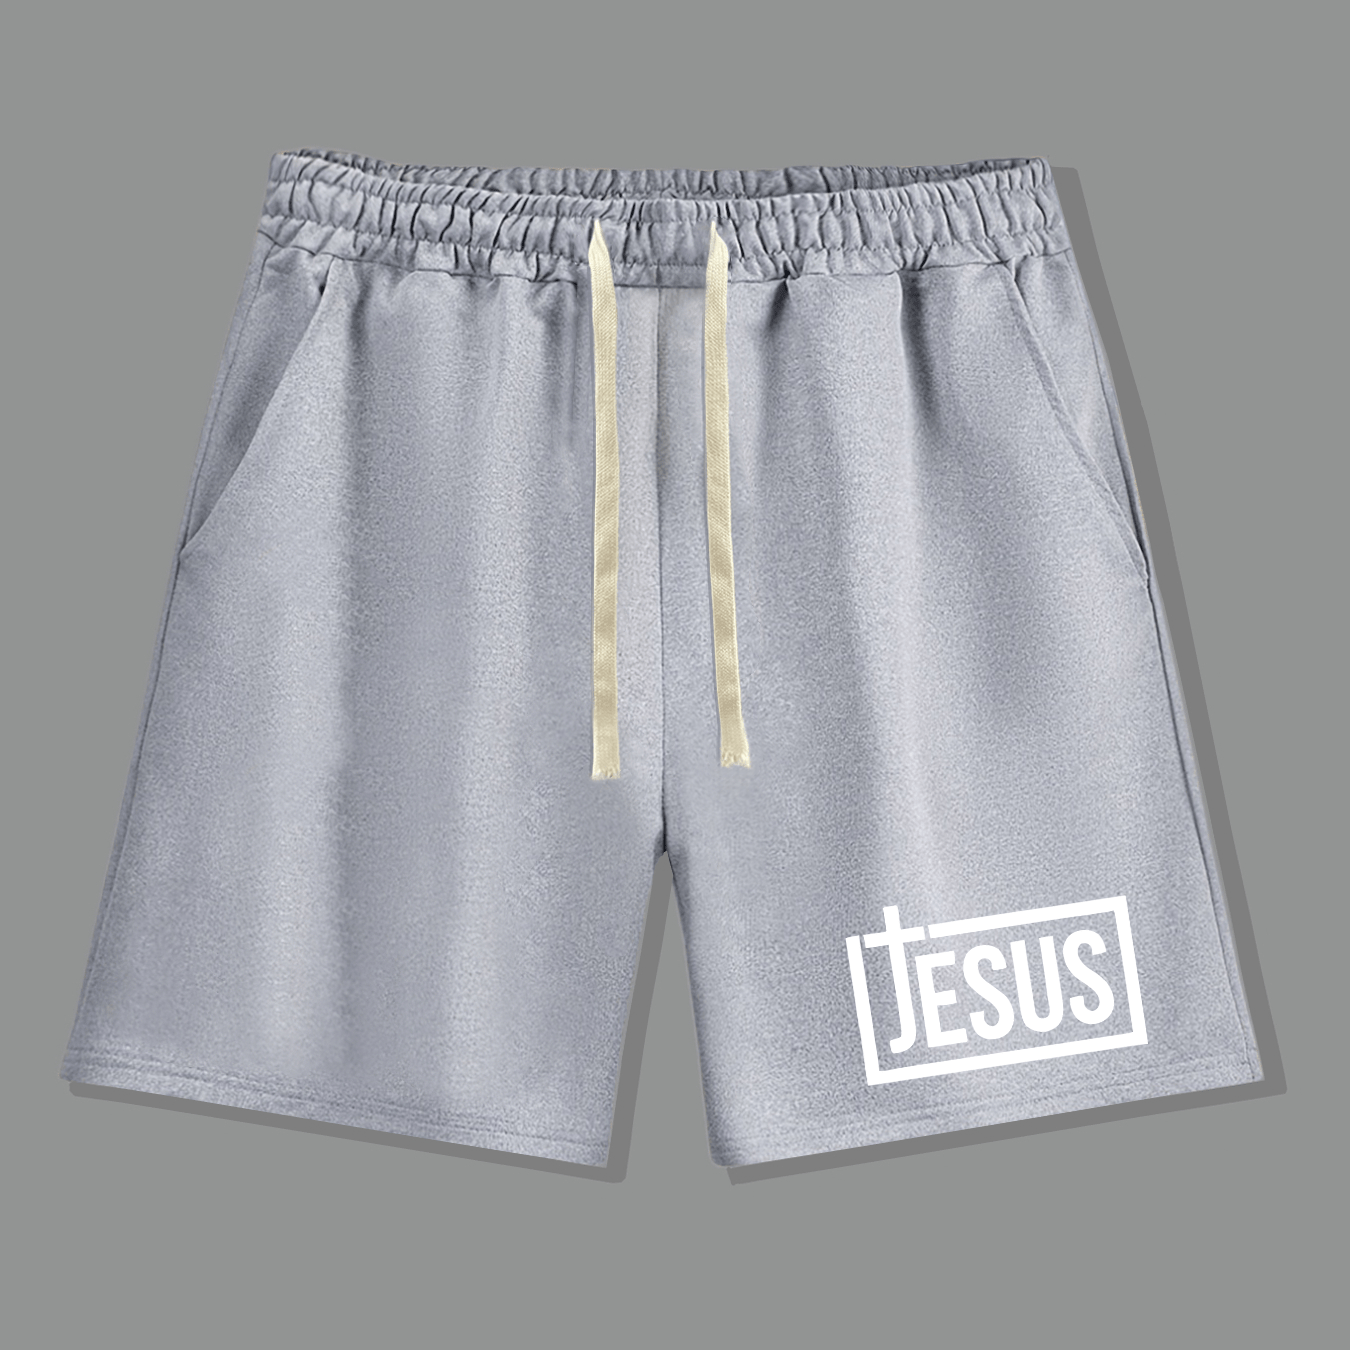 Jesus Cross Men's Christian Shorts claimedbygoddesigns